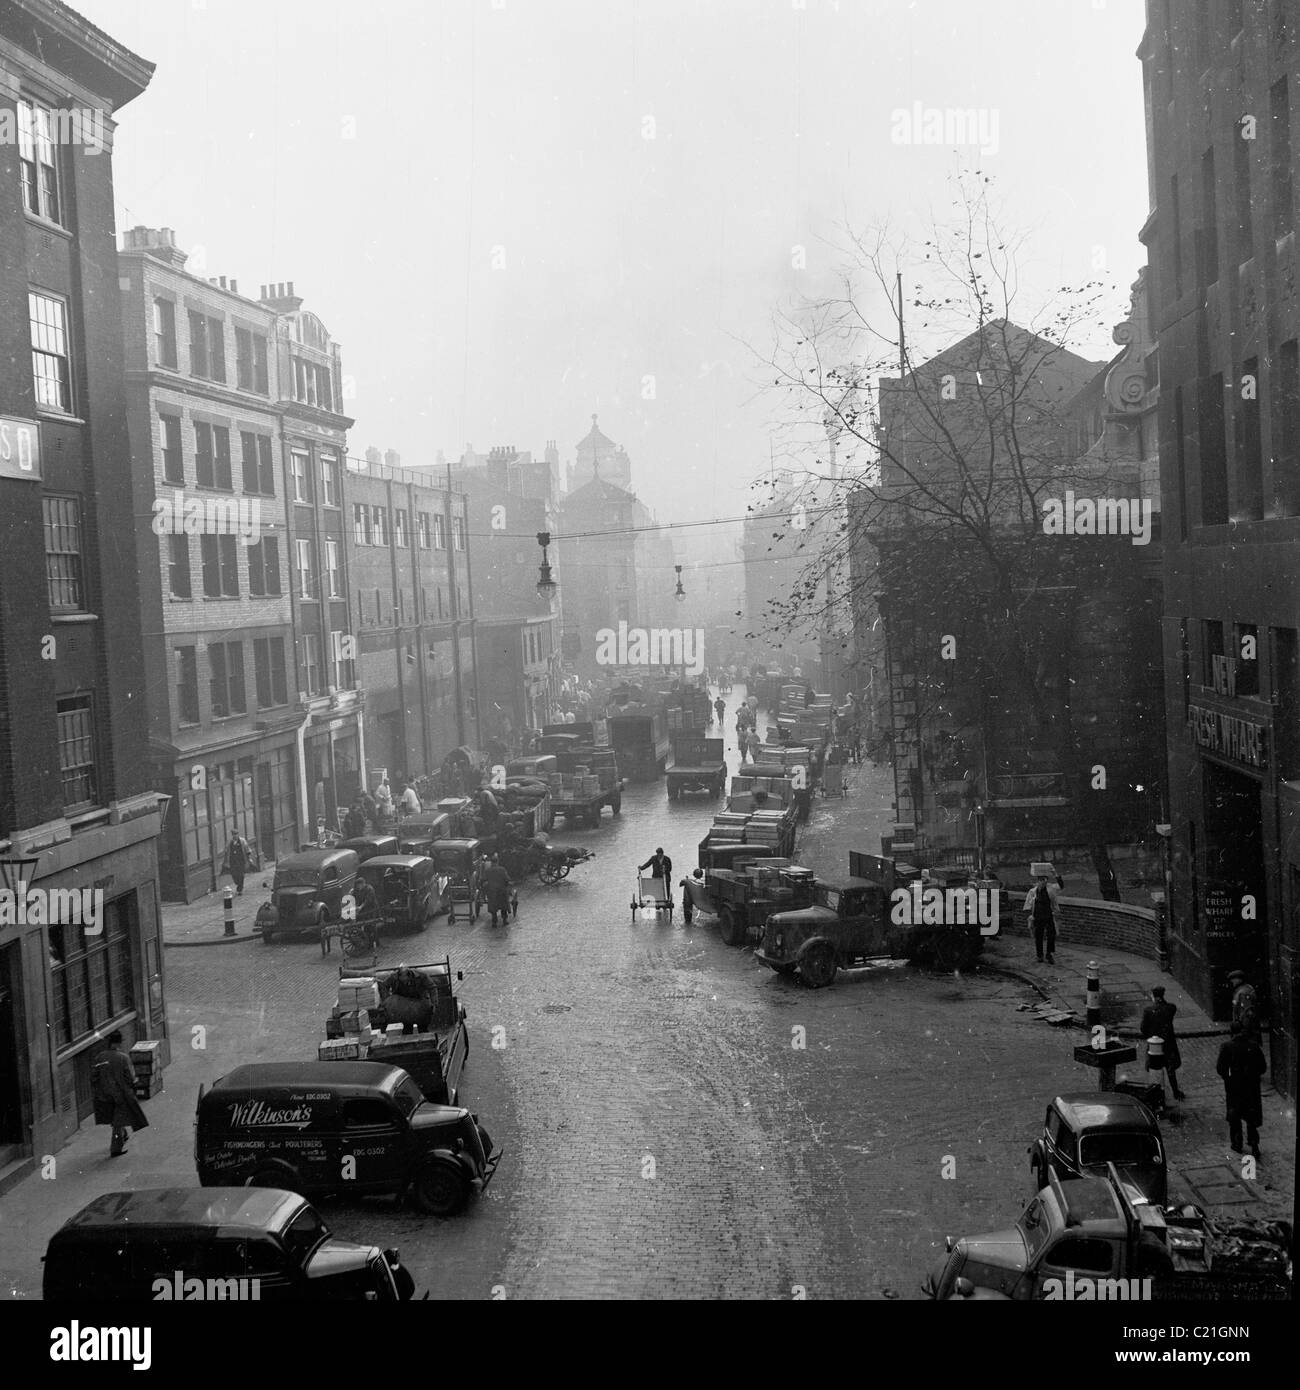 England der 1950er Jahre. Sehen Sie auf einen belebten Marktstraße, in der Nähe von St Martins Lane, London in diesem historischen Bild von J Allan Cash. Stockfoto